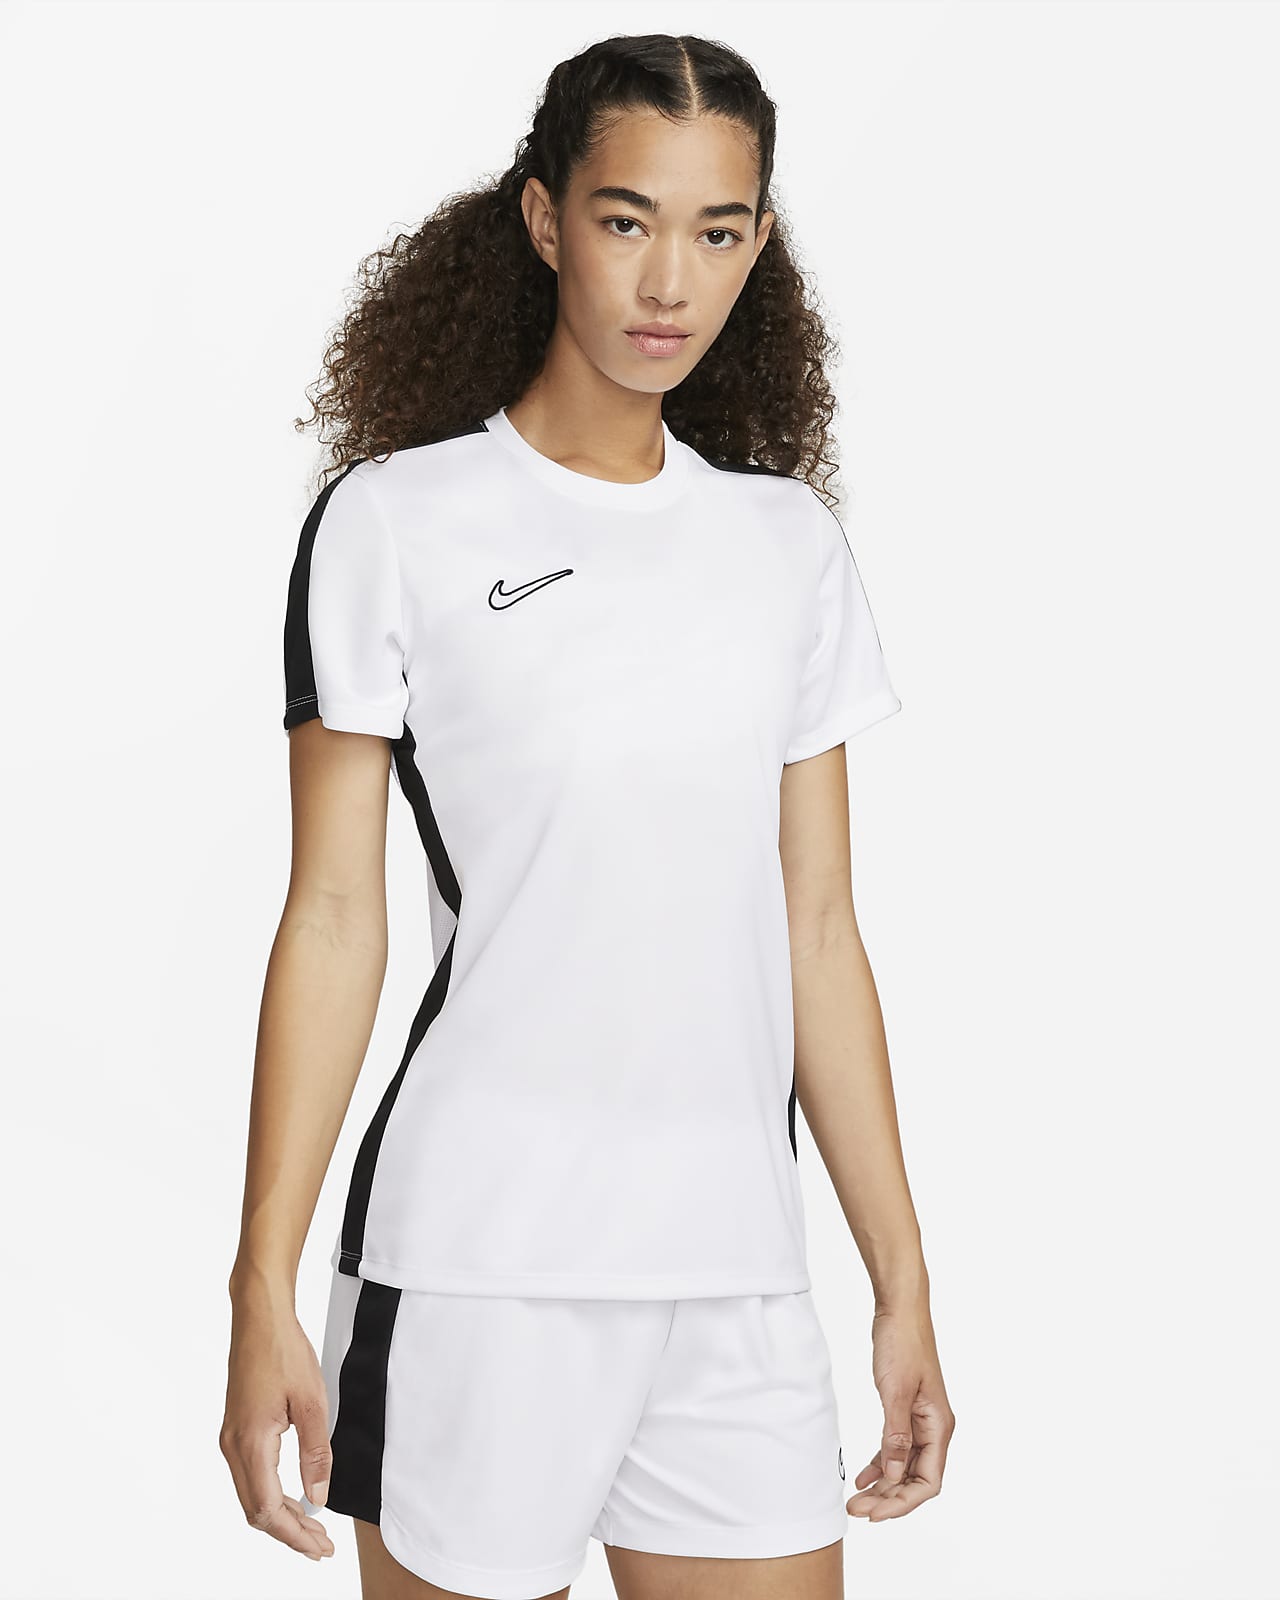 Dámské fotbalové tričko Nike Dri-FIT Academy s krátkým rukávem